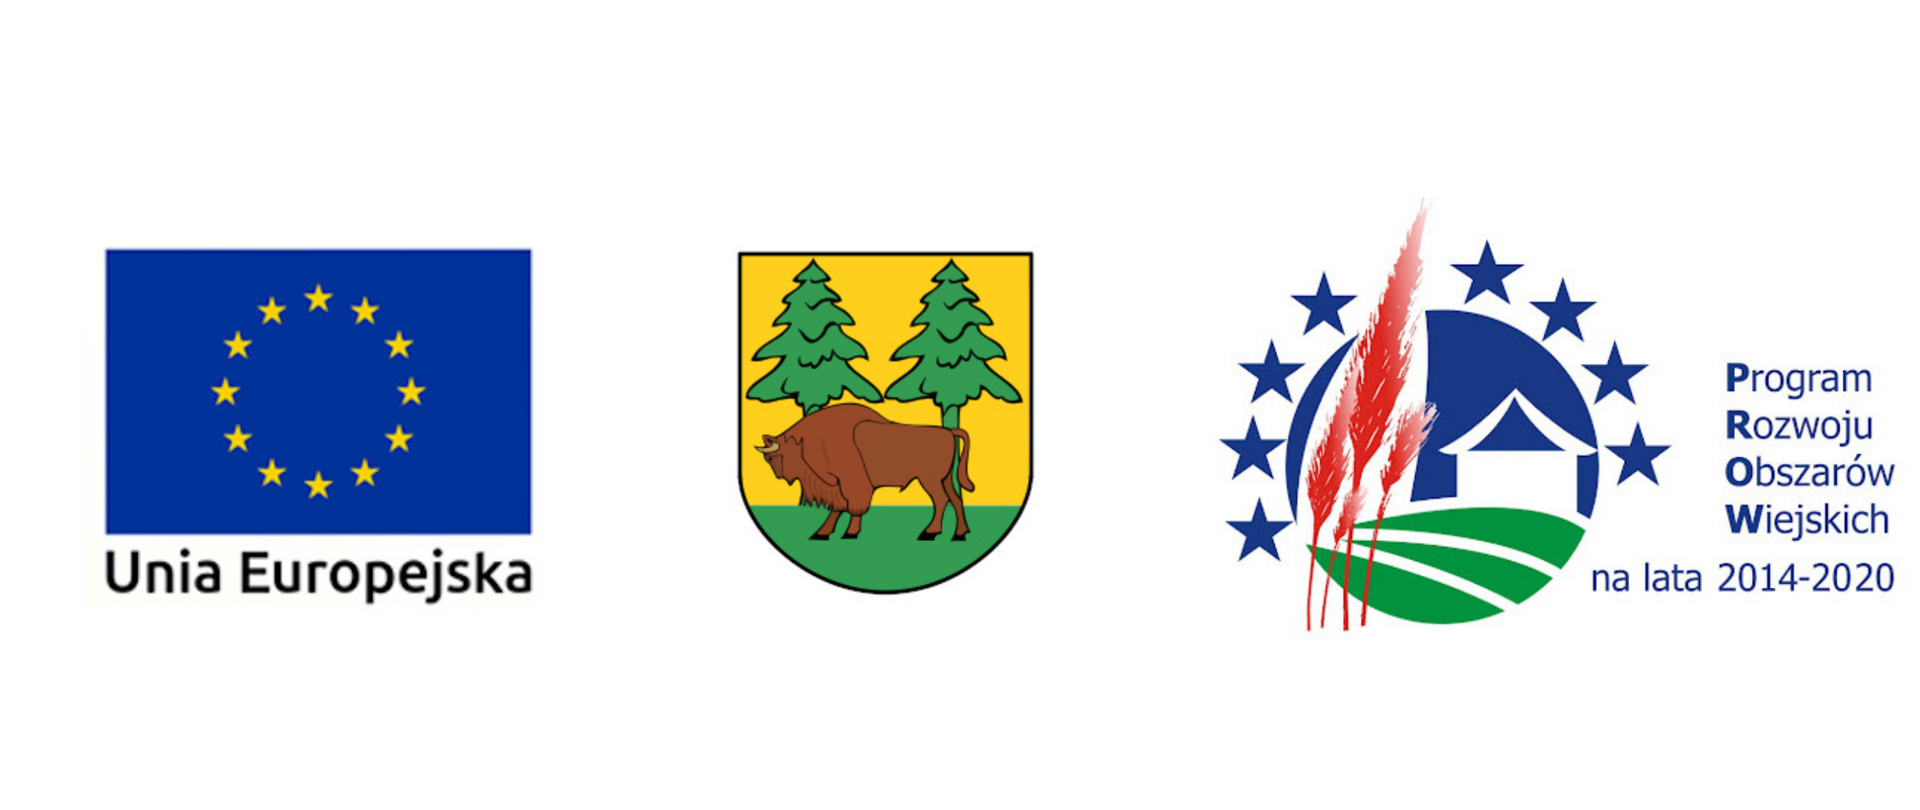 Logotypy projektu: od lewej Flaga Unii Europejskiej (na niebieski tle 12 gwiazdek tworzących koło), Herb Powiatu Hajnowskiego (na żółto - zielonym tle żubr i dwa świerki), logo Programu Rozwoju Obszarów Wiejskich na lata 2014-2020 (Na niebieskim tle czerwone kłosy, grafika domu i pola. Całość okalają niebieskie gwiazdy)